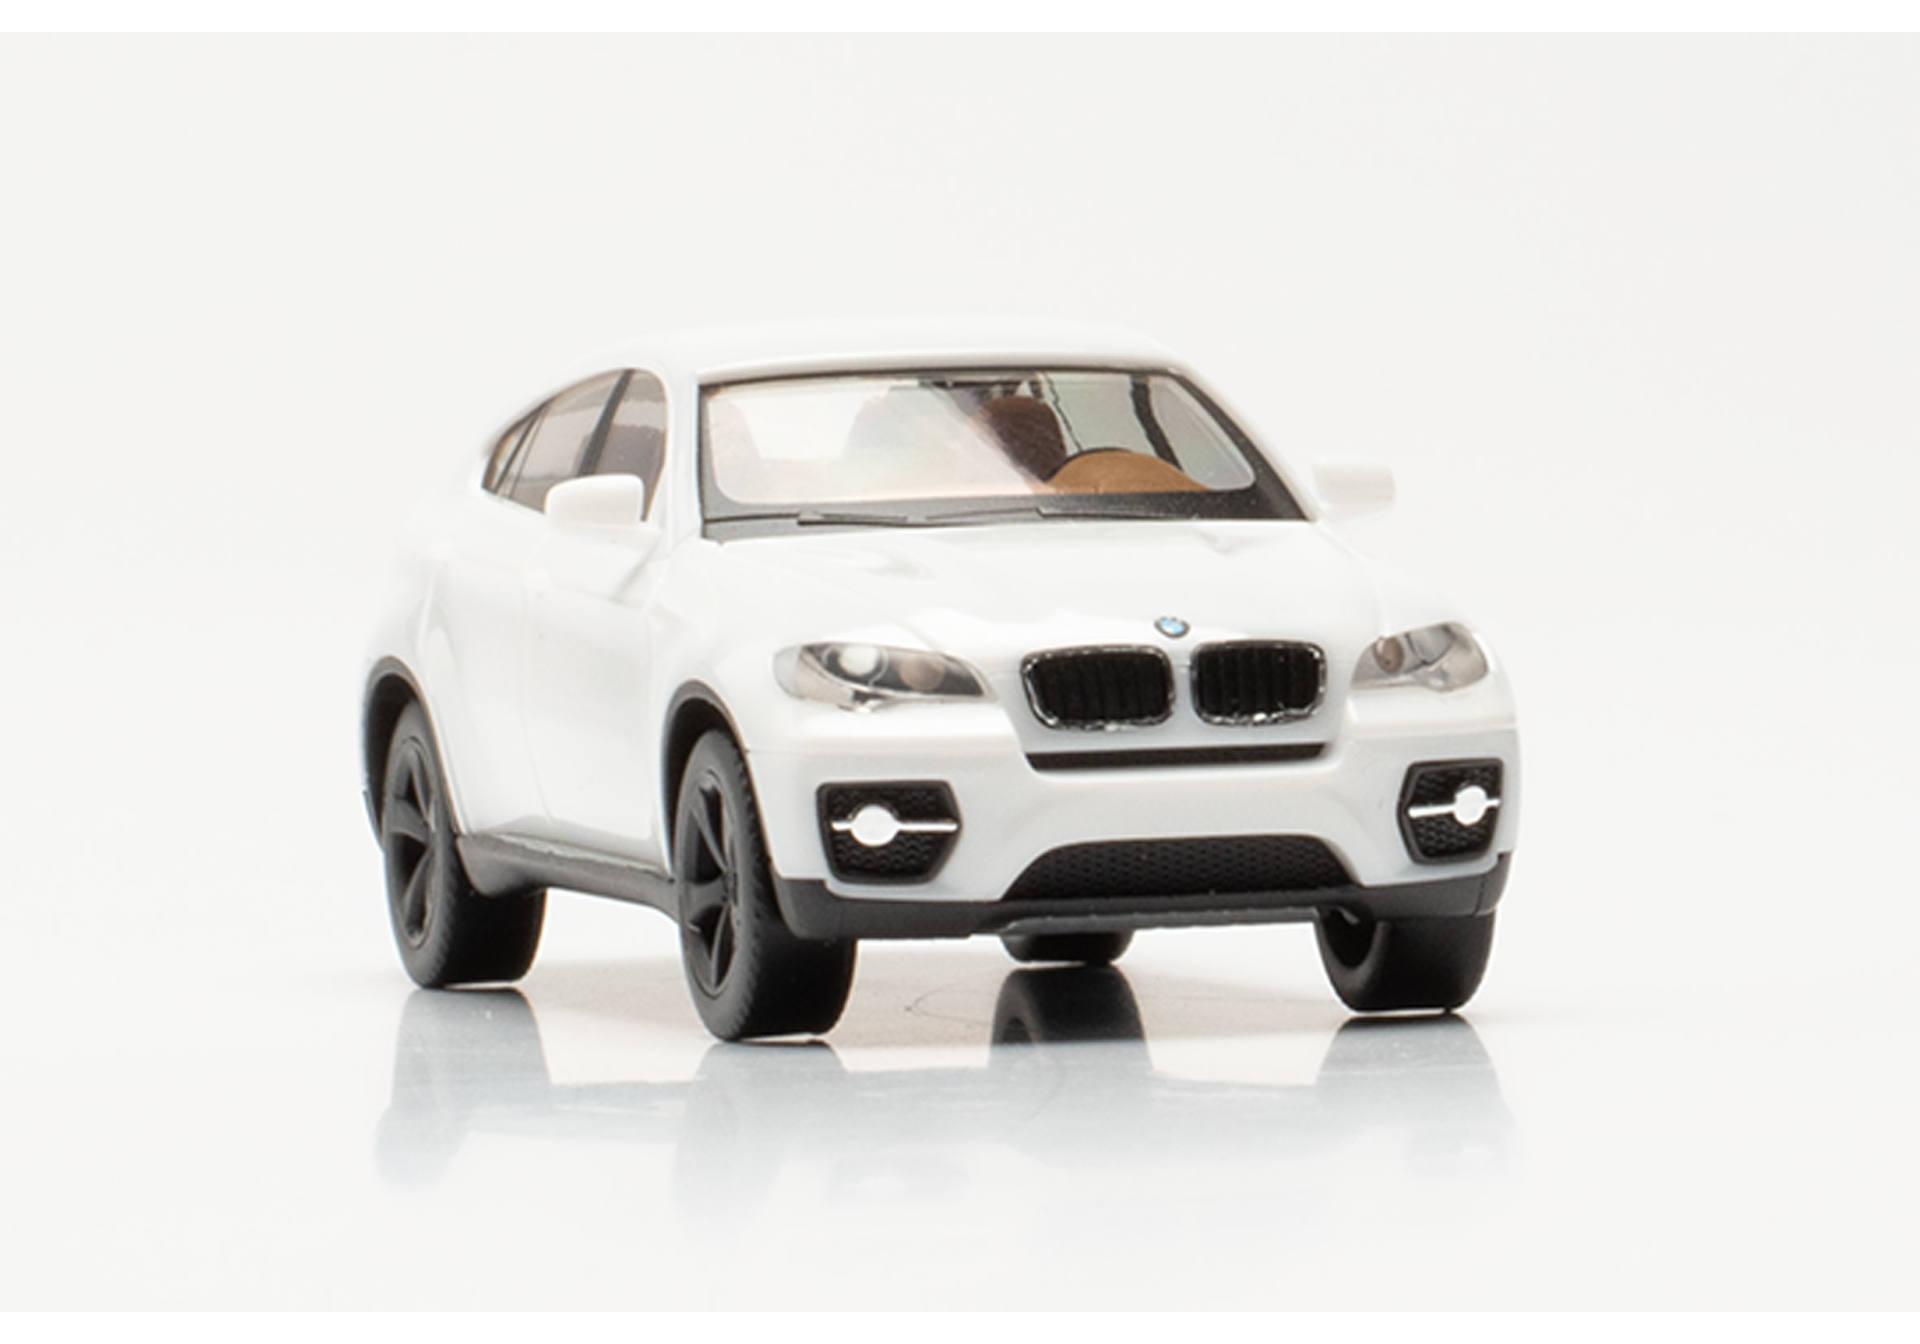 BMW X6, white, black rims